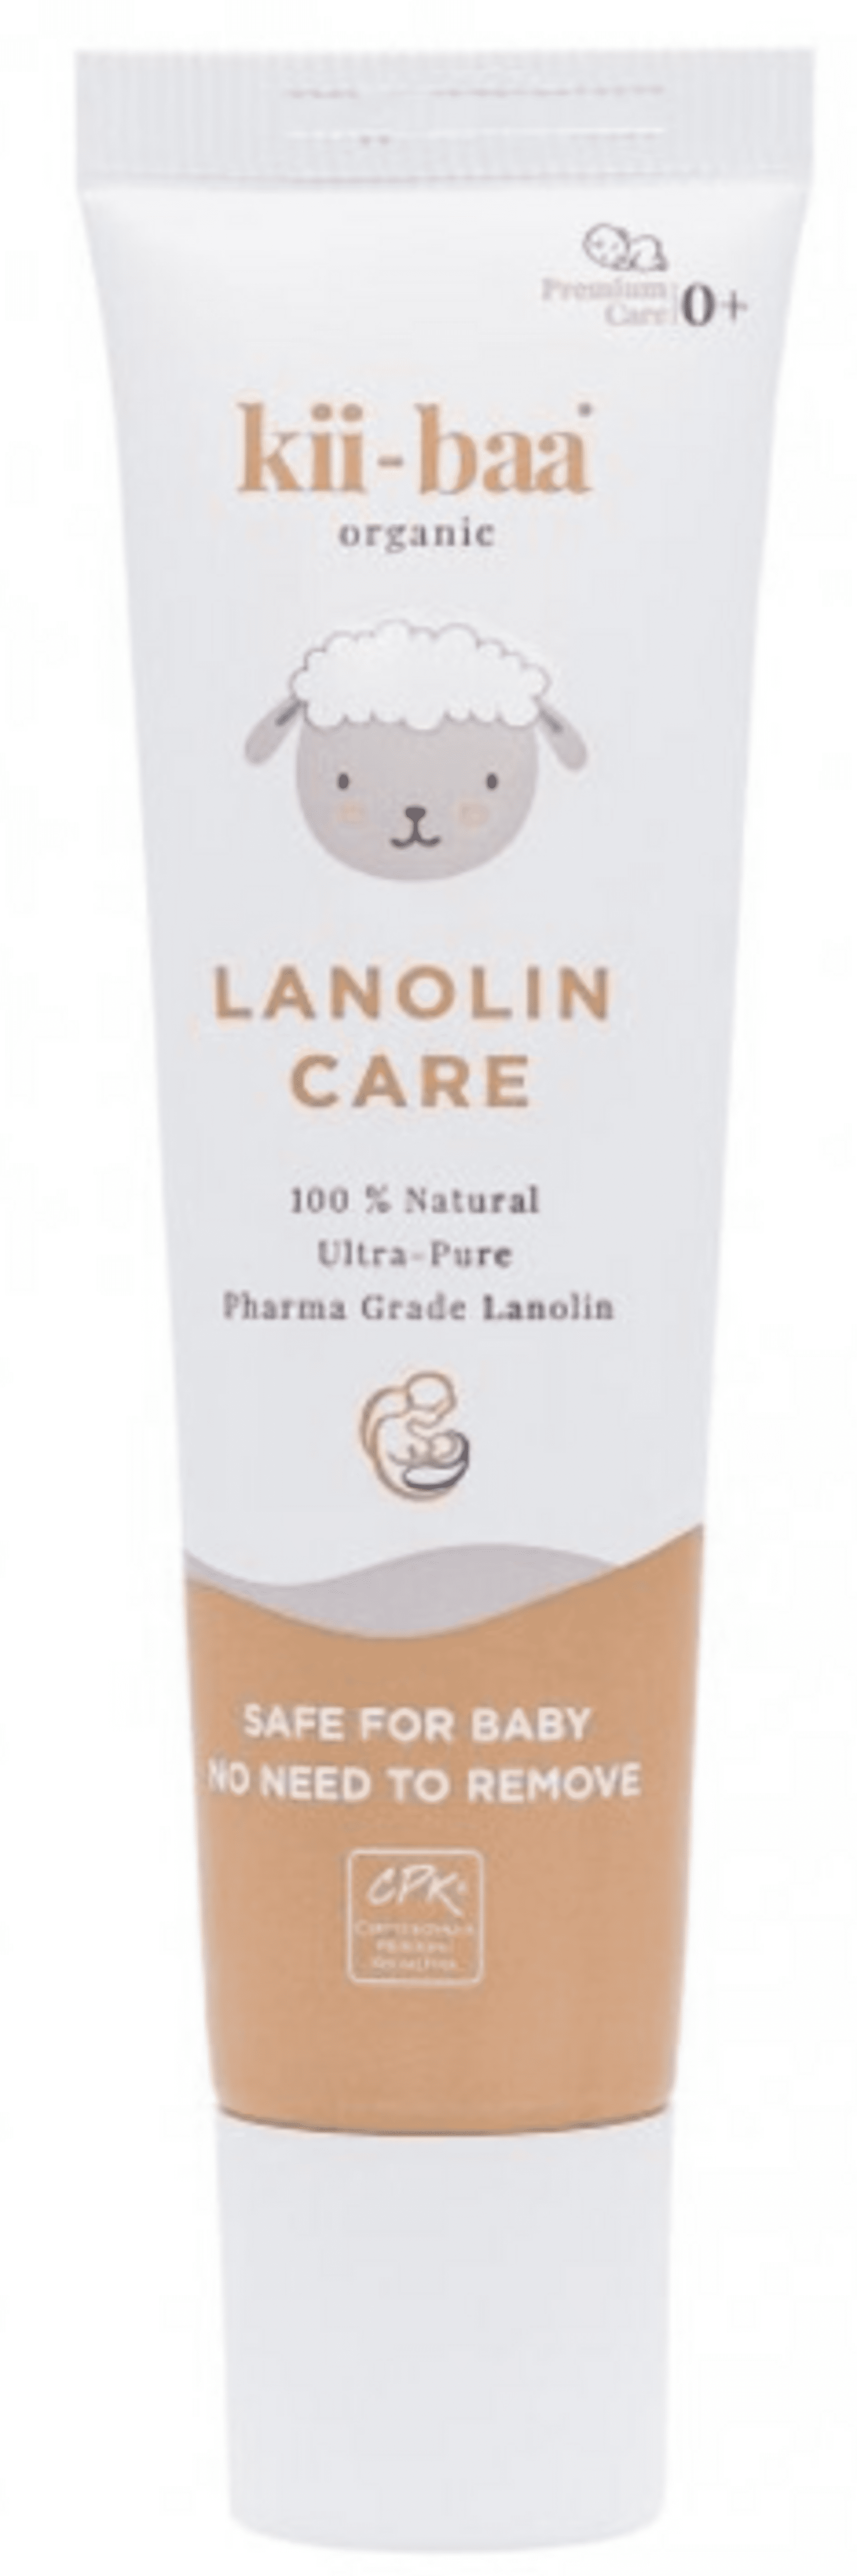 E-shop Kii-baa organic Lanolin care ultračistý 100% 0+ 30 g